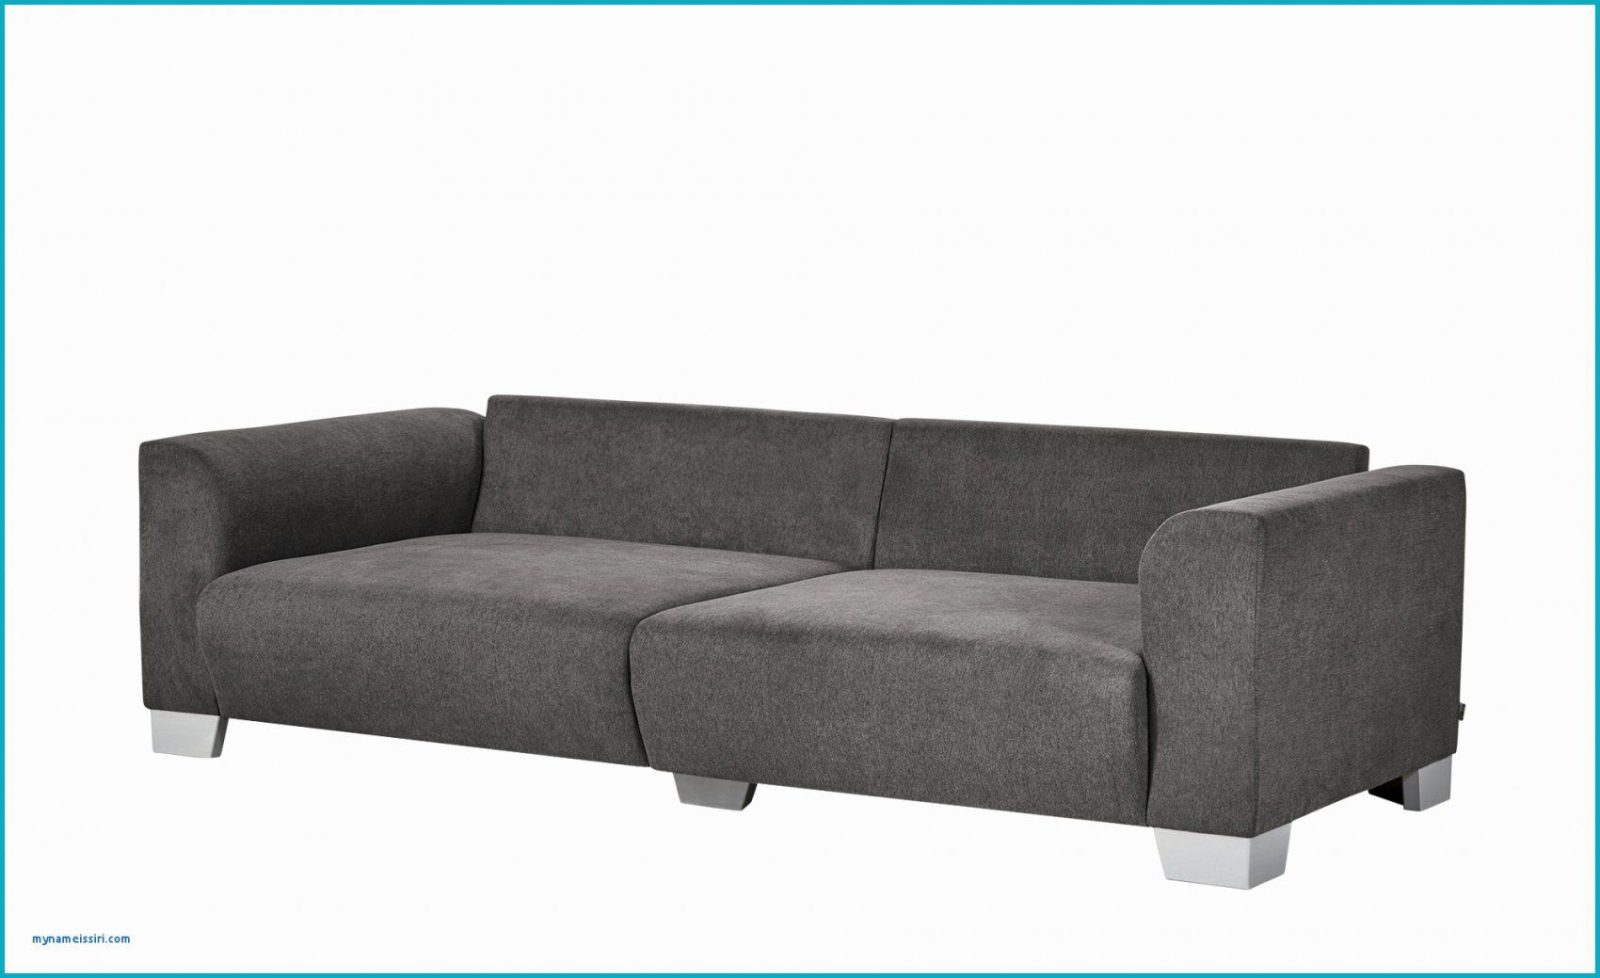 Couch Auf Rechnung Als Neukunde Cheap With Couch Auf Rechnung Als von Sofa Auf Rechnung Als Neukunde Photo